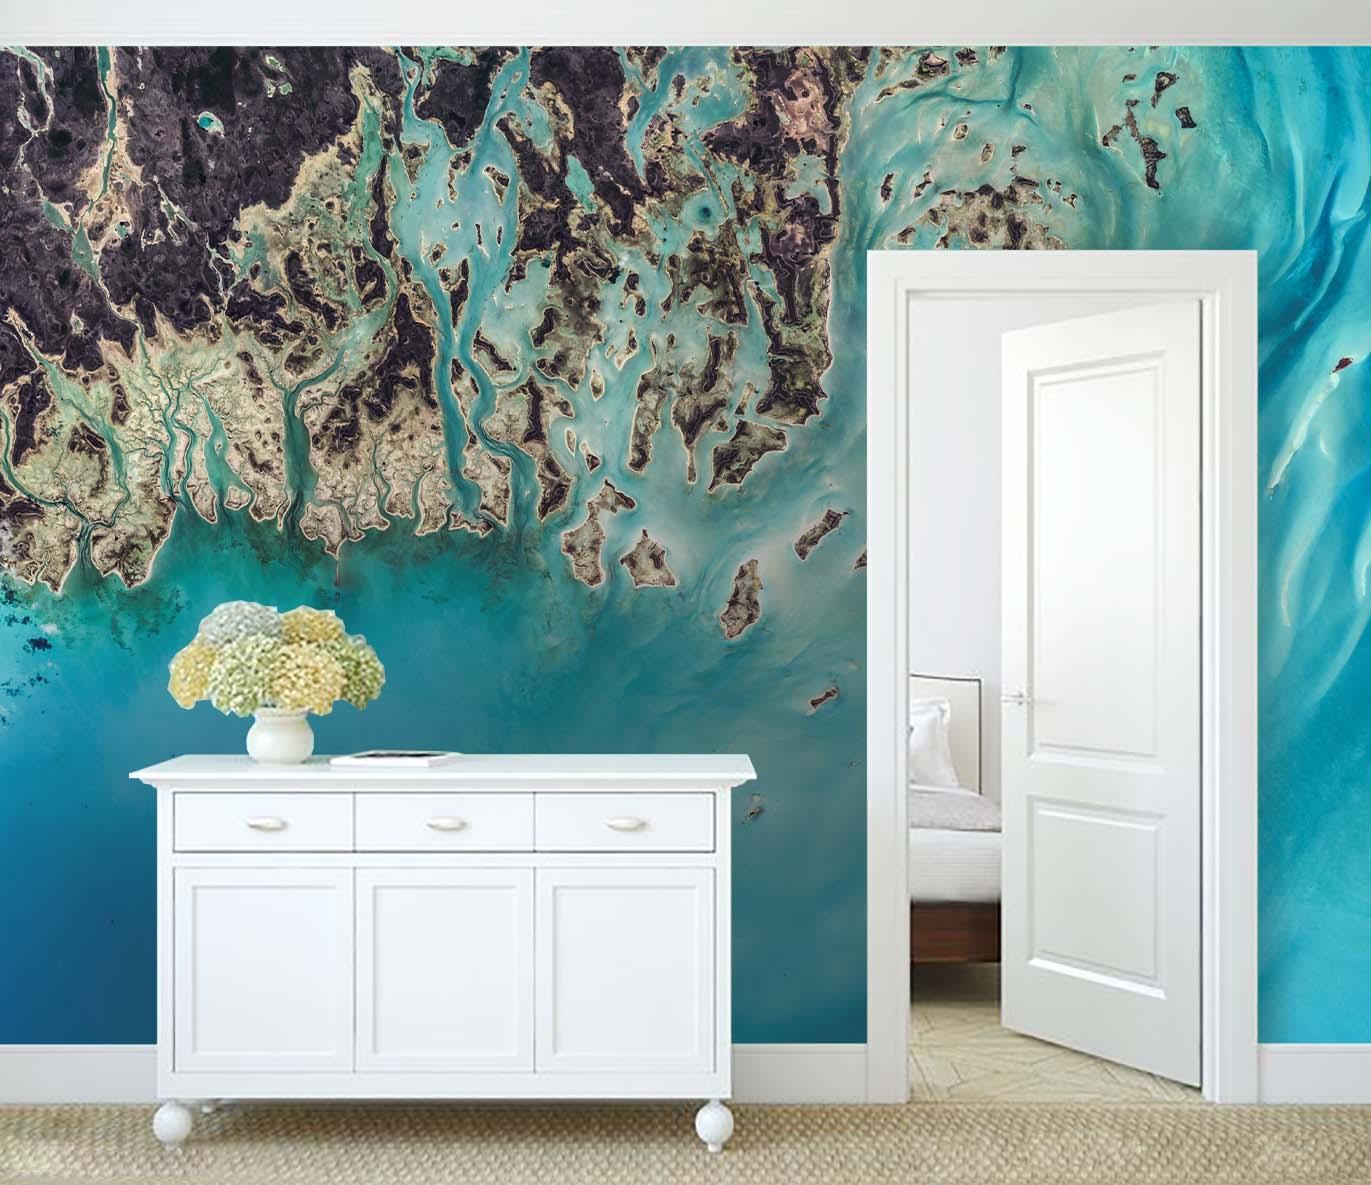 3D Overlooking Blue Sea Reef Wall Mural Wallpaper 73- Jess Art Decoration